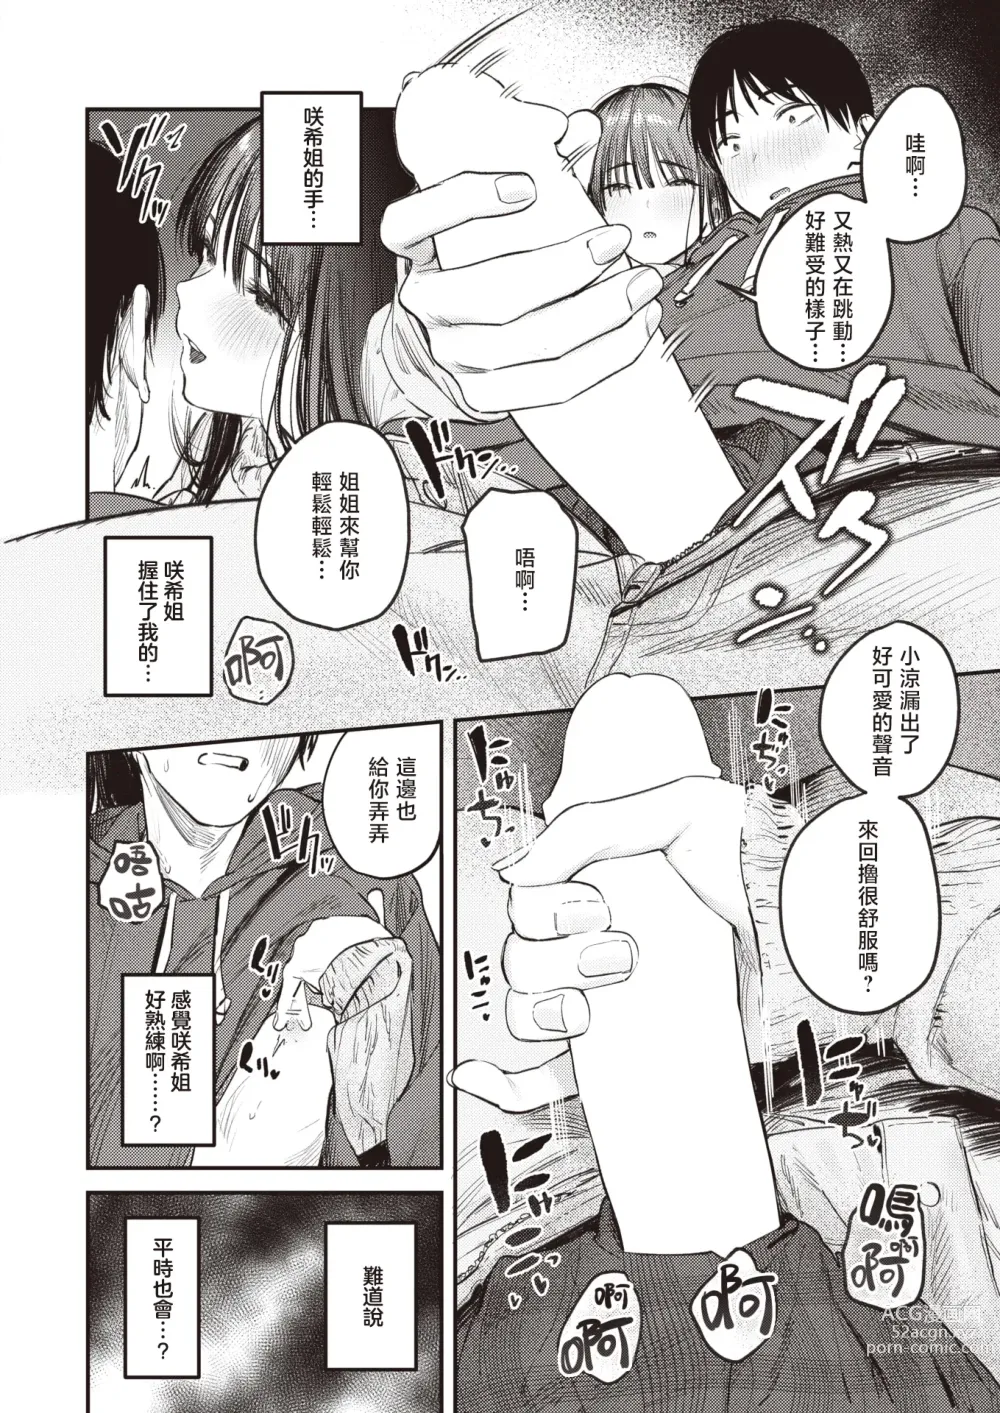 Page 11 of manga 直到雾释冰融